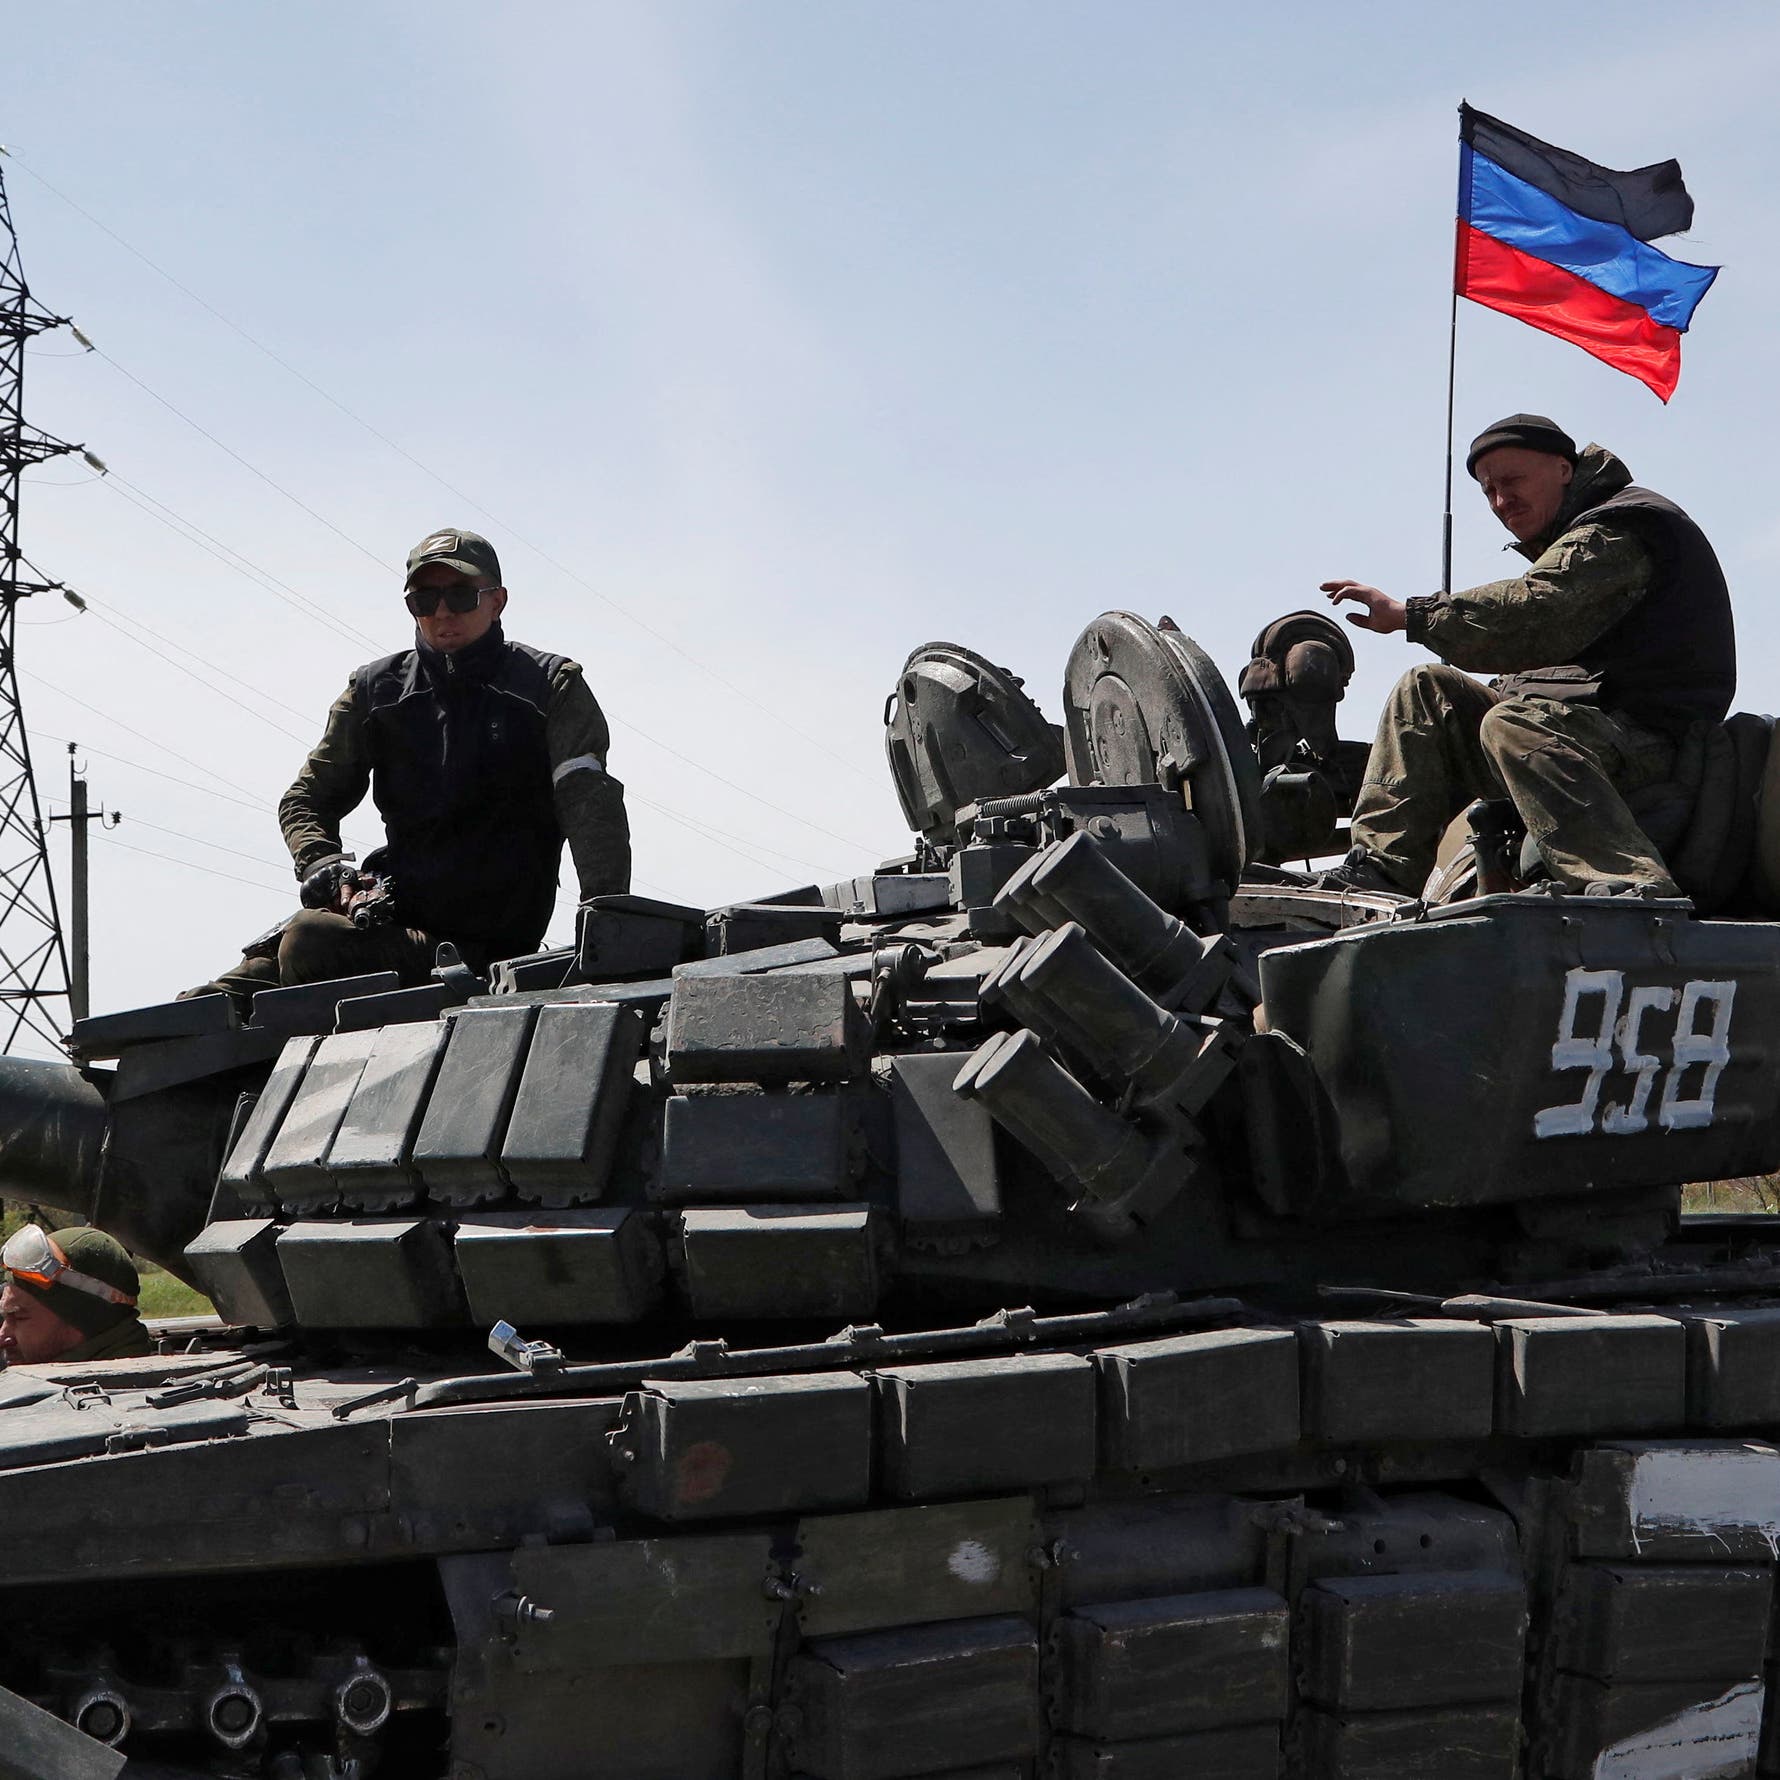 Russia lost 25,500 troops, 2,741 APVs in Ukraine since Feb. 24